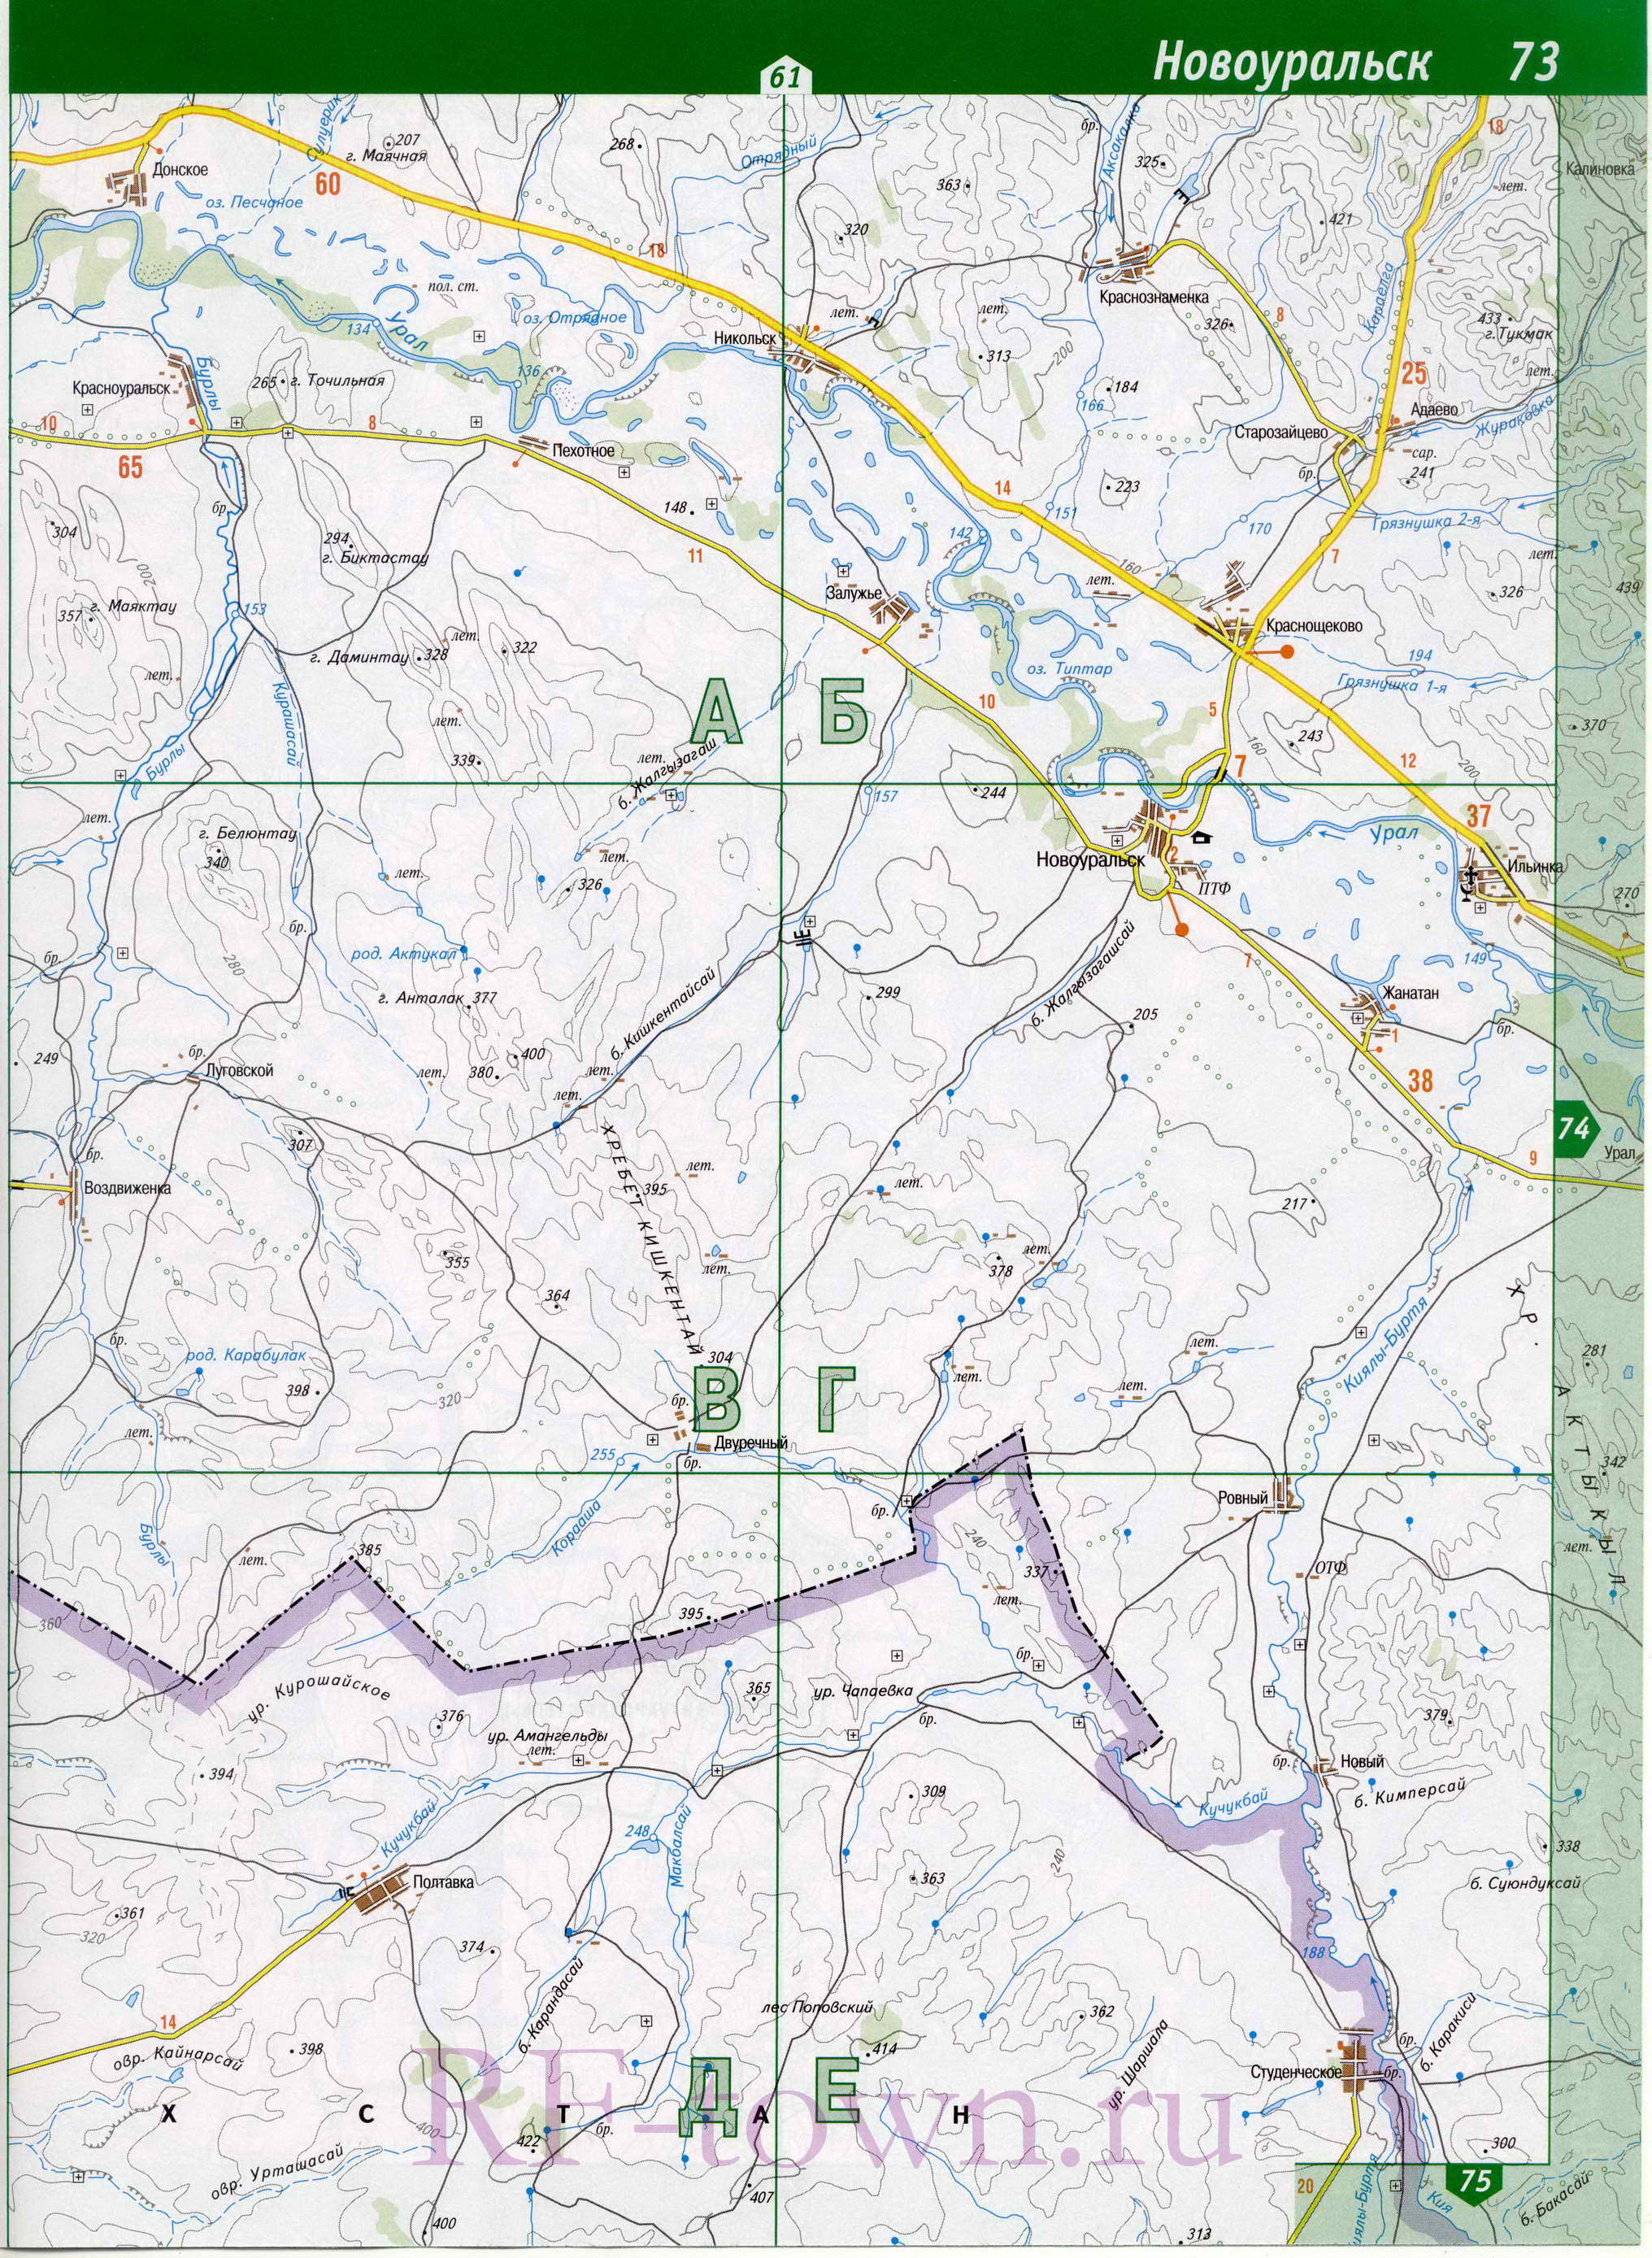 Кувандыкский район карта. Топографическая карта Кувандыкского р-на Оренбургской области масштаба 1см:2км, A1 - 